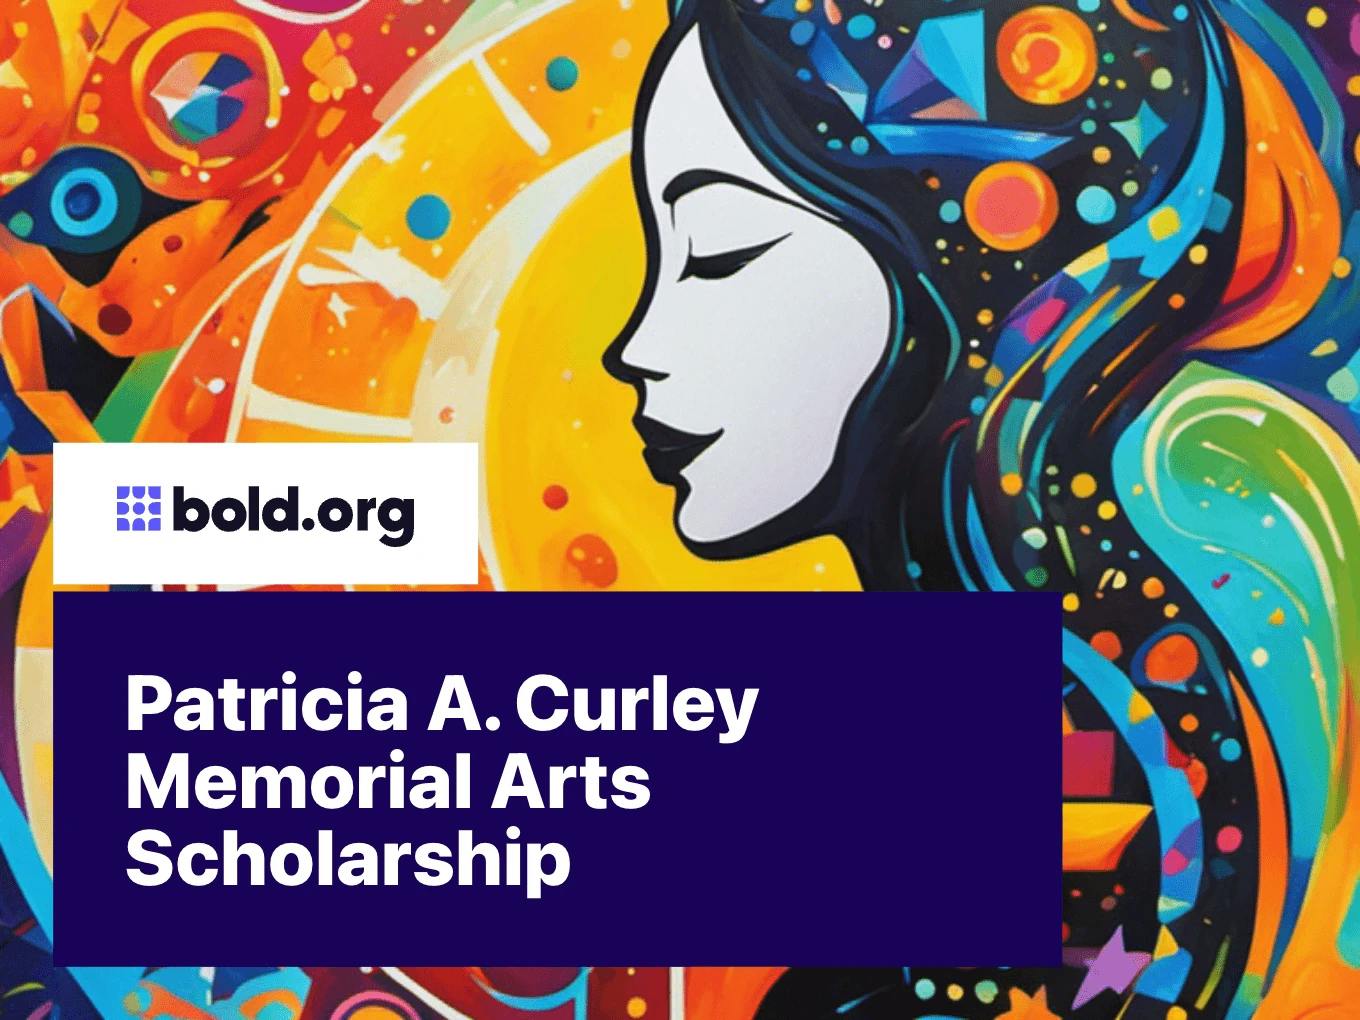 Patricia A. Curley Memorial Arts Scholarship